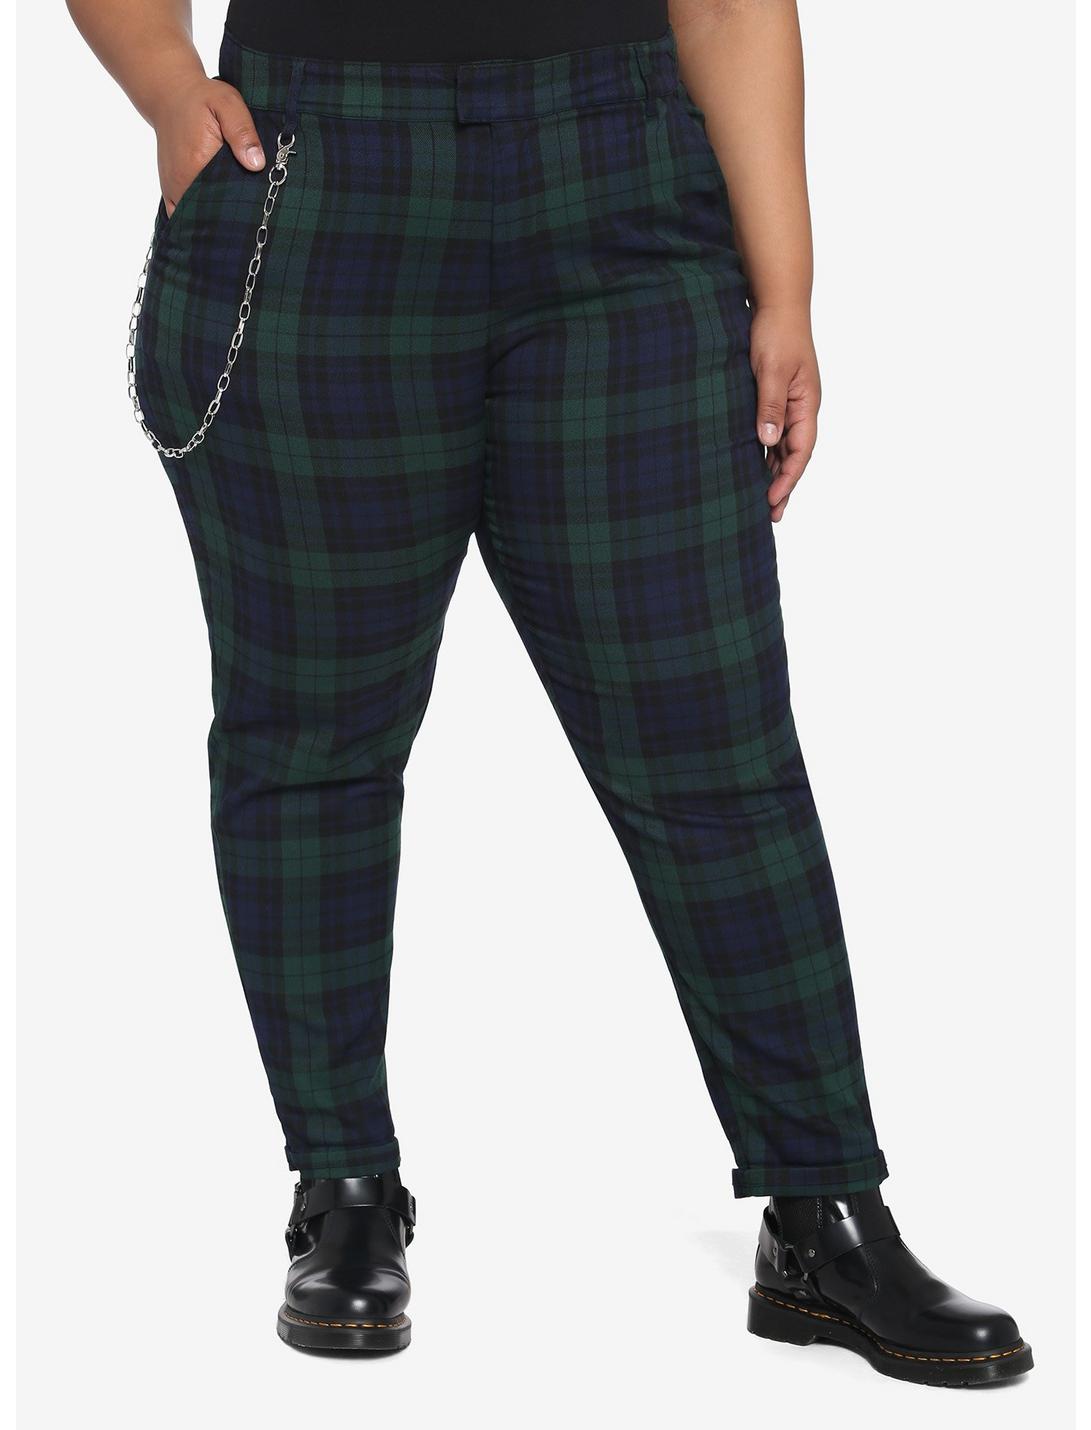 Blue & Green Plaid Pants With Detachable Chain Plus Size, PLAID - GREEN, hi-res